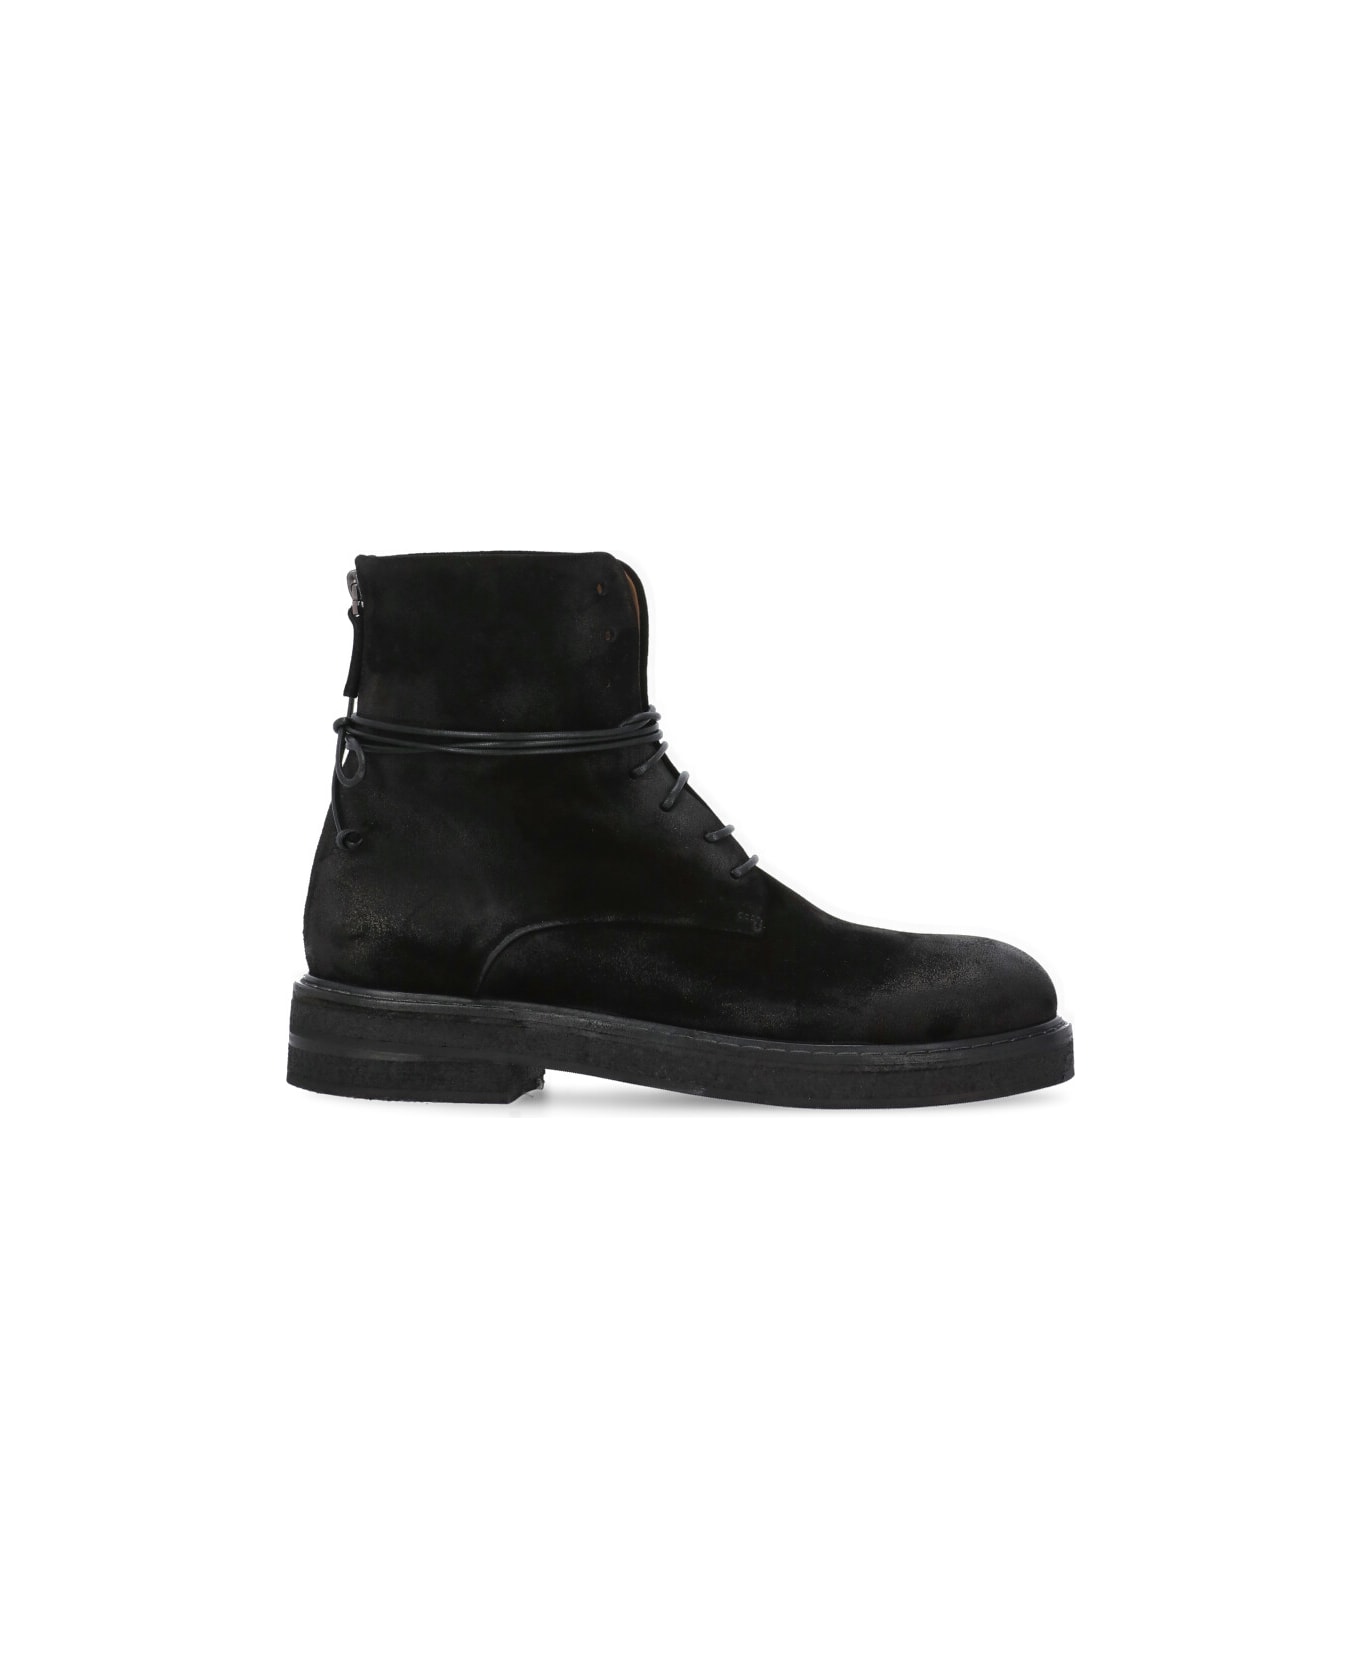 Marsell Parrucca Combat Boots - Black